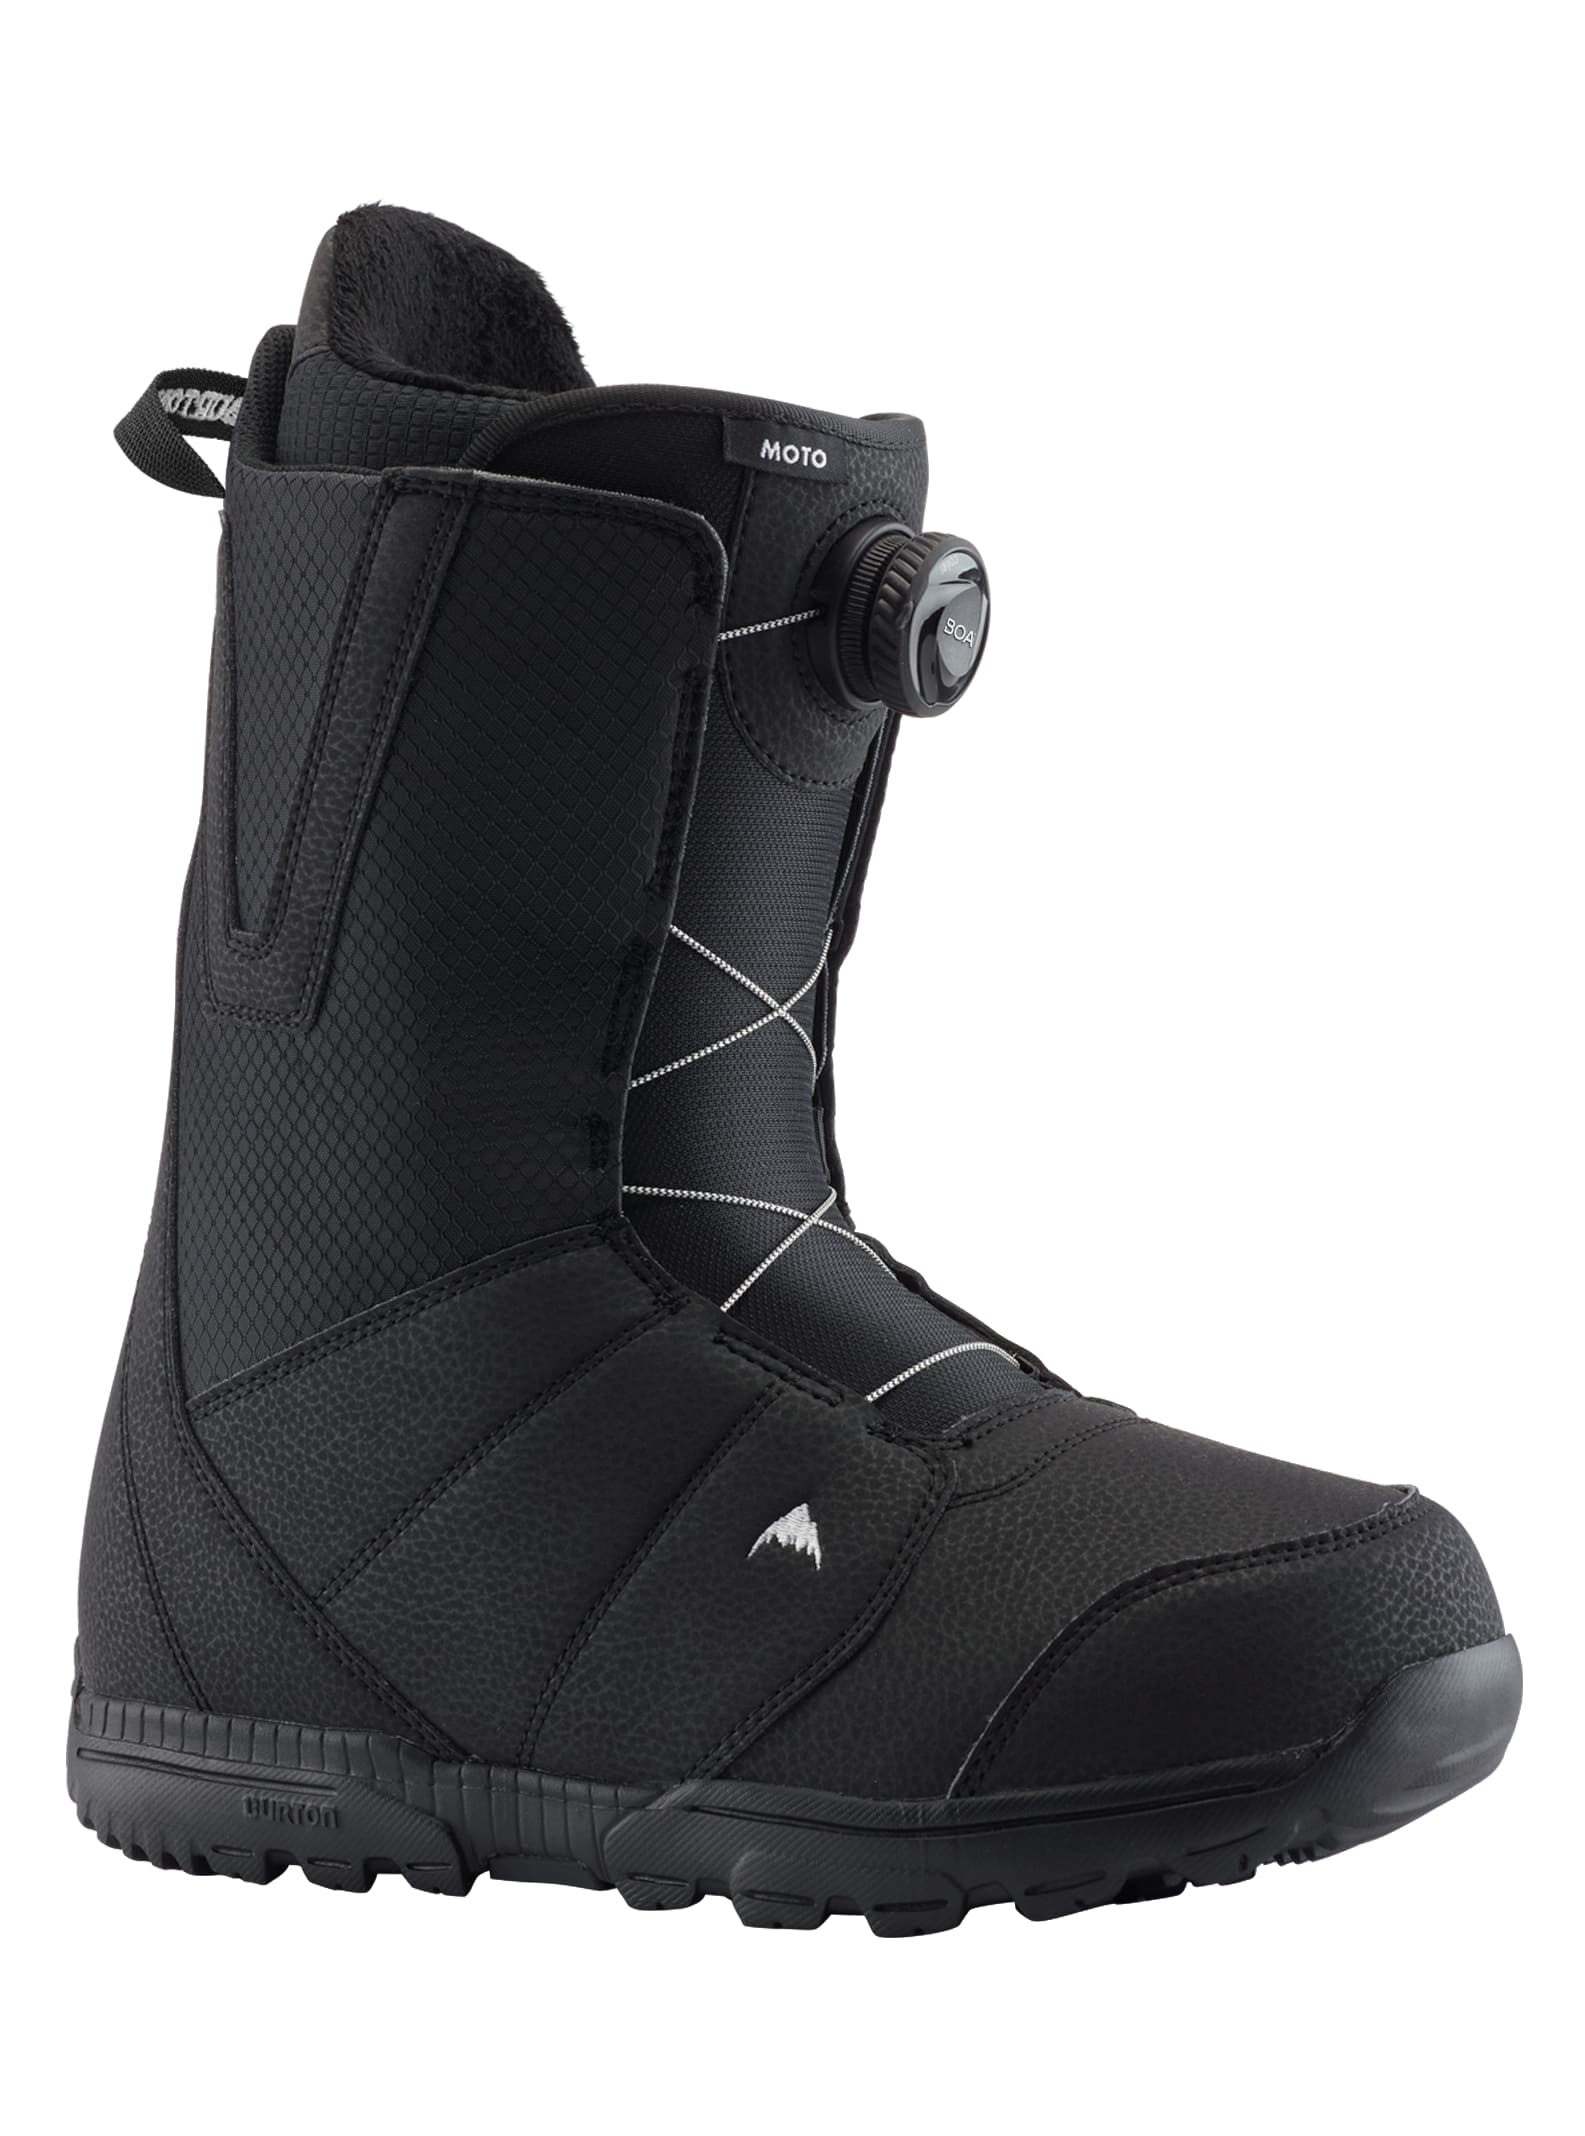 Men's Burton Moto BOA® Wide Snowboard Boots